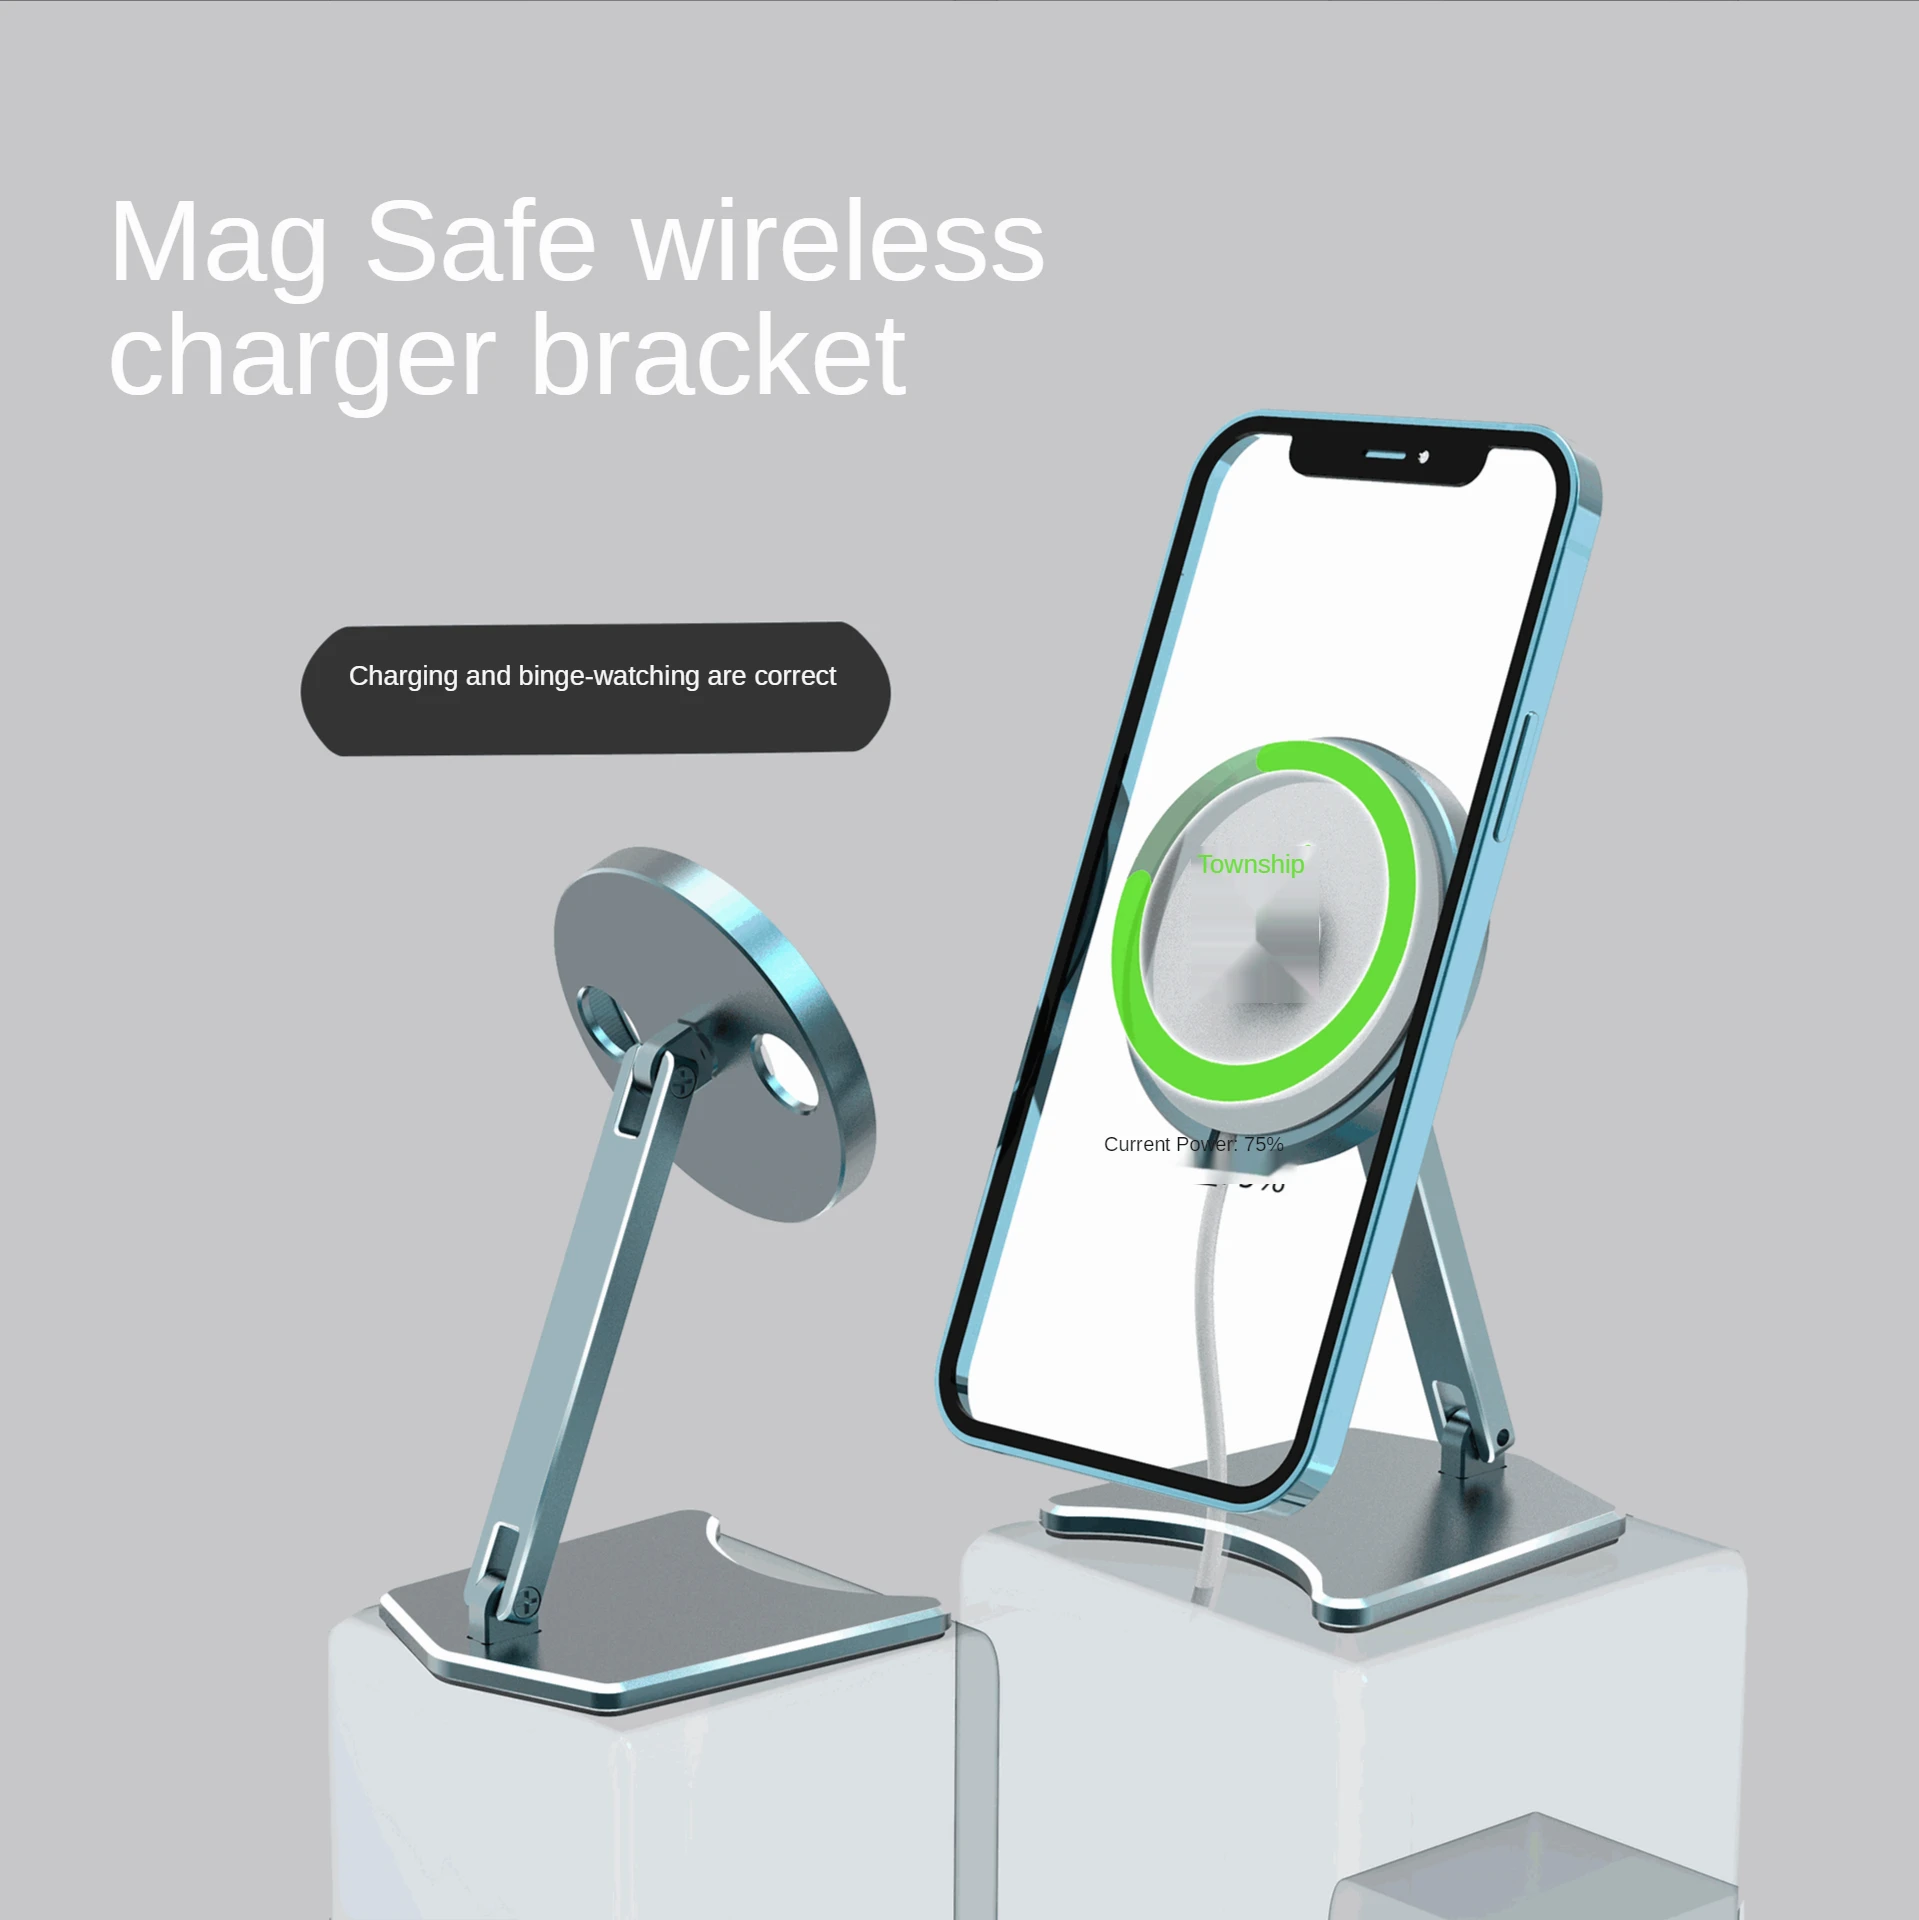 Yeni taşınabilir cep telefonu kablosuz şarj braketi Apple katlanabilir manyetik emme şarj braketi için uygundur